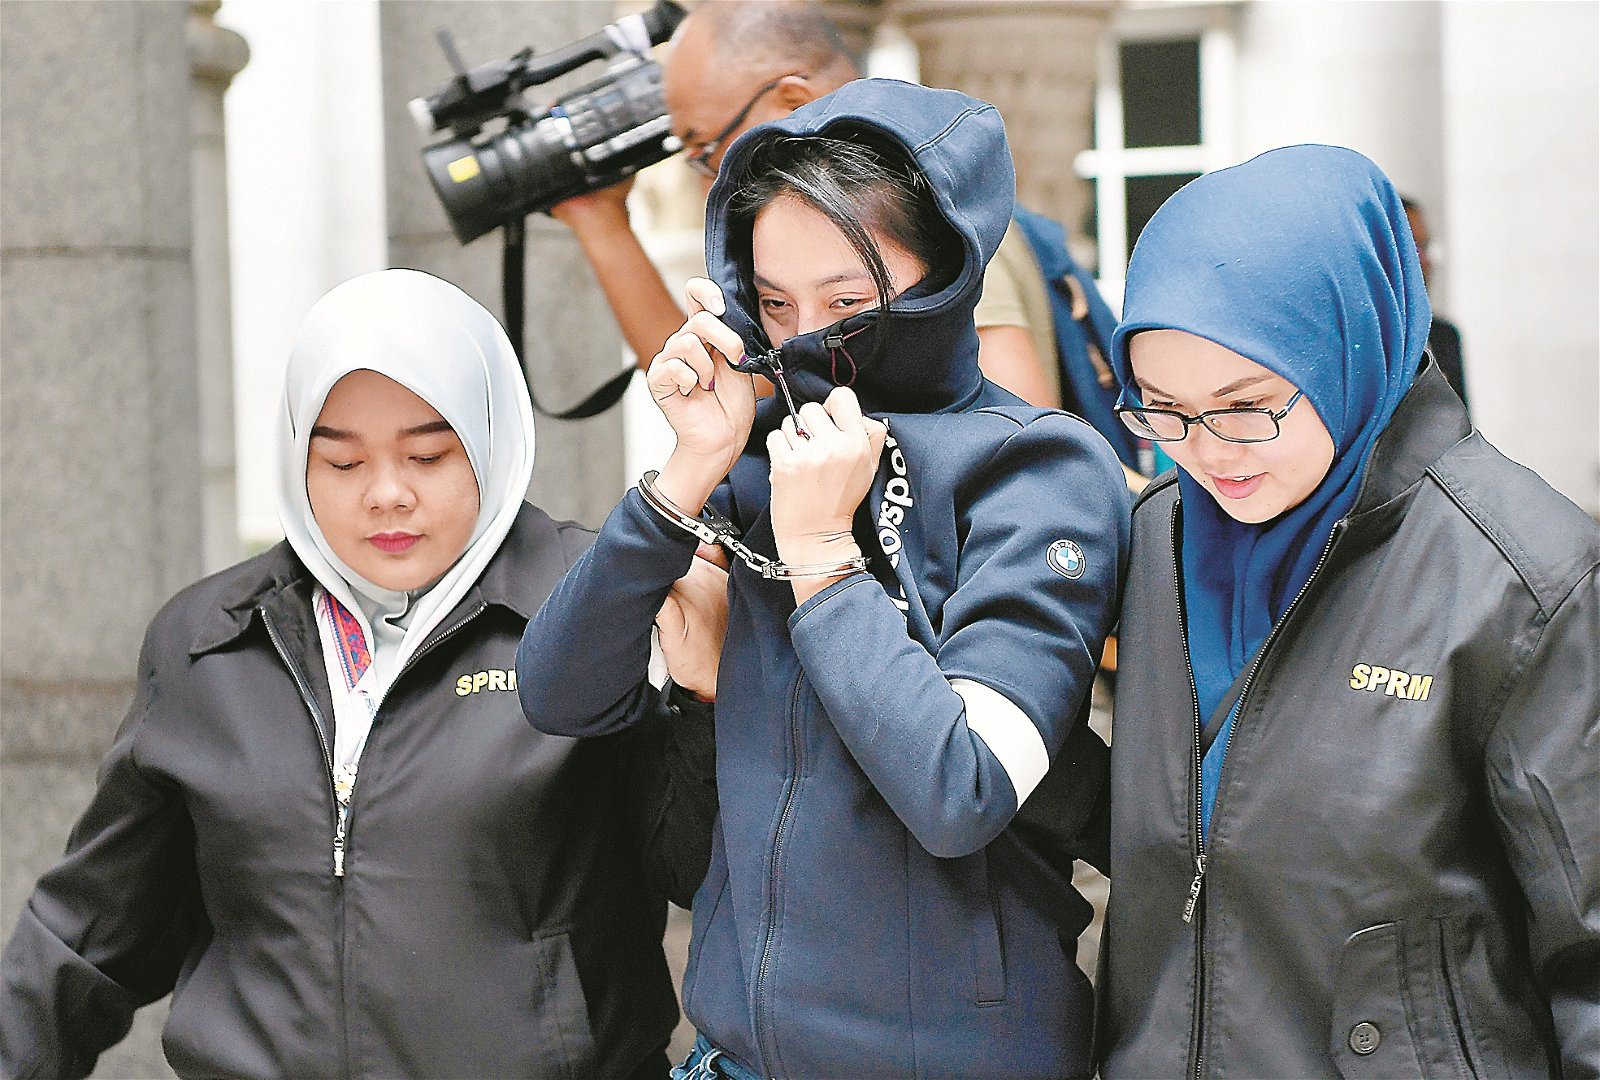 私人公司女首席执行员简芝颖（中），反贪会官员的护送下带入推事庭时，用衣服闪避摄影的镜头，而其双手被套上手铐。